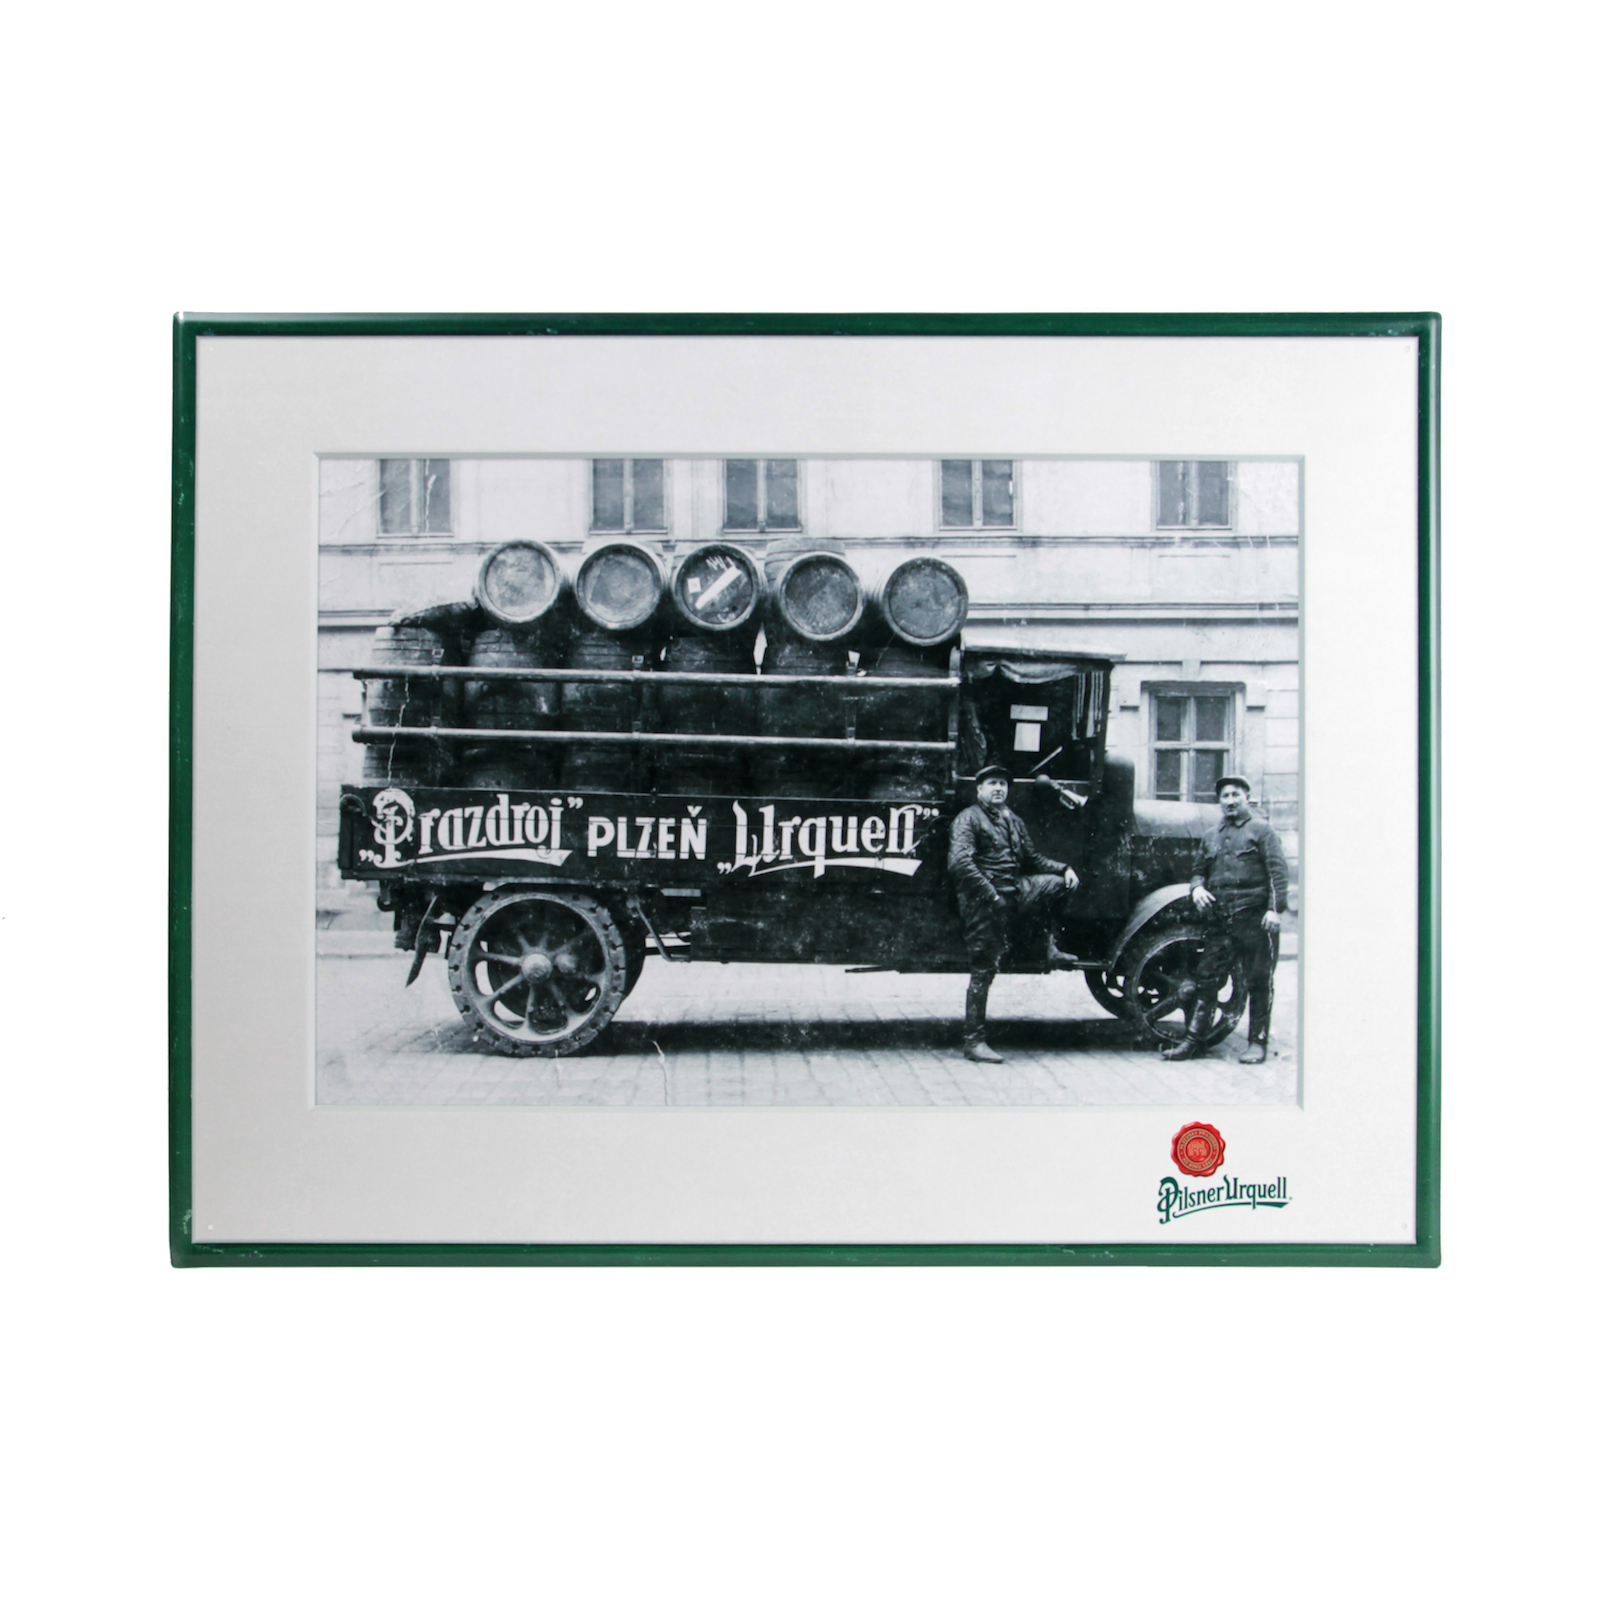 Blechschild Pilsner Urquell - Motiv Automobil